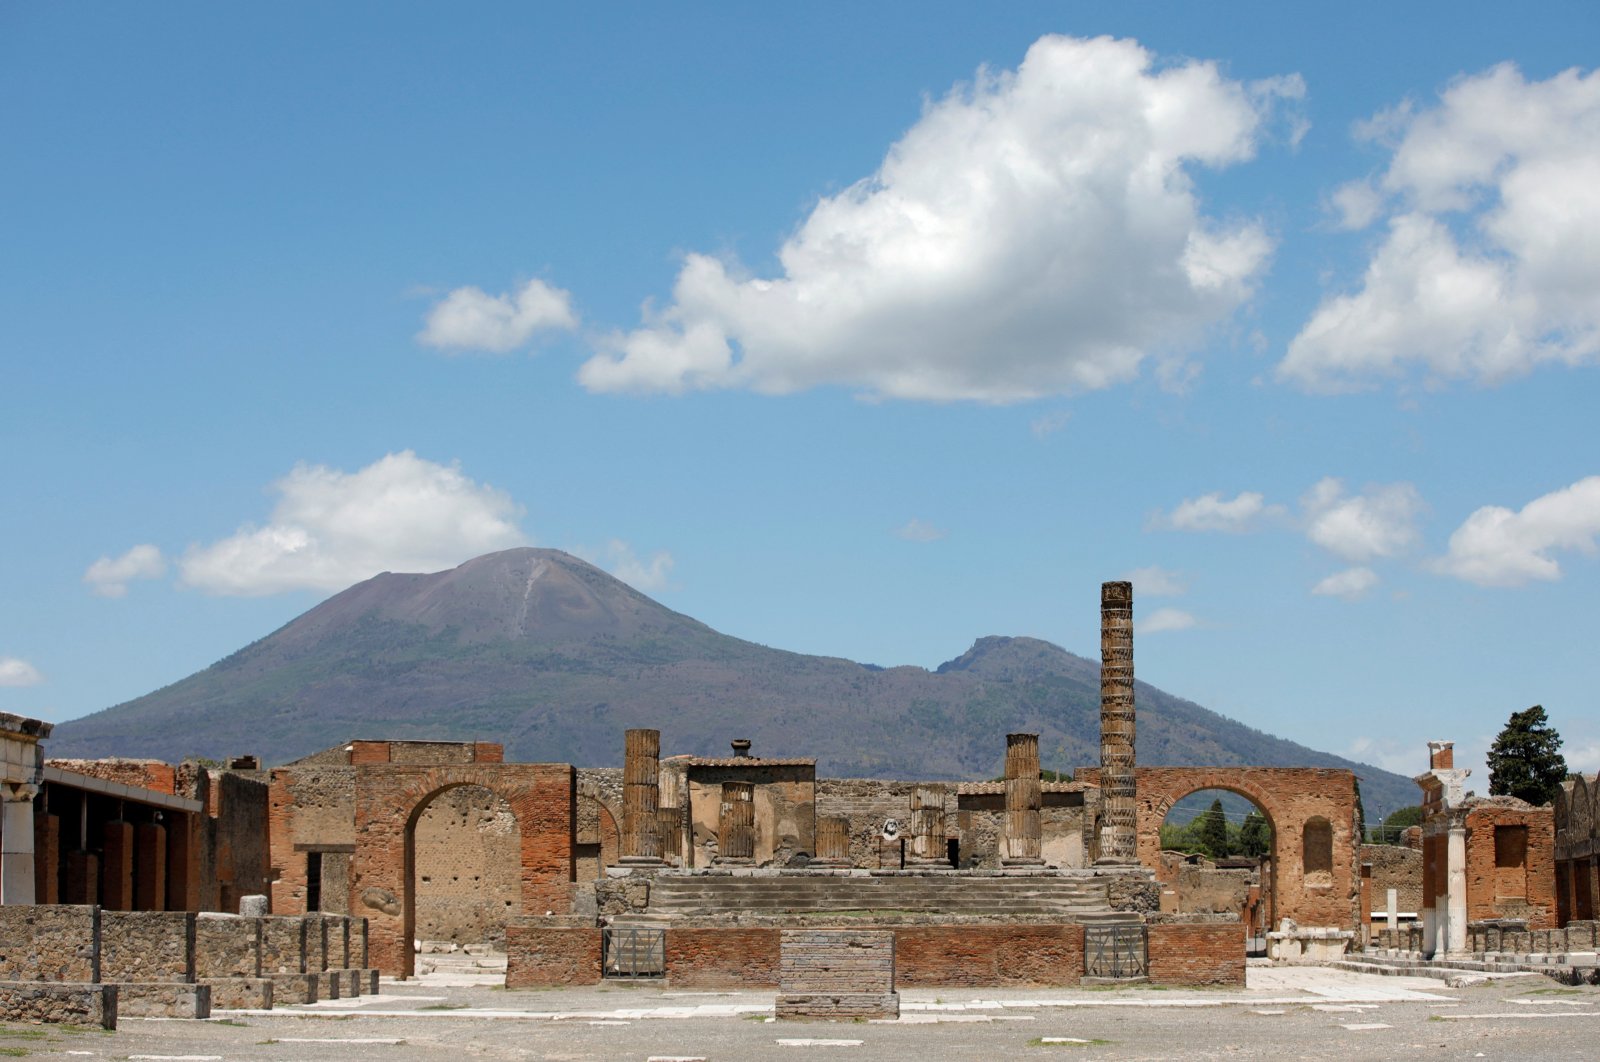 Kerangka Pompeii yang baru ditemukan memberikan bukti lebih lanjut tentang gempa bumi